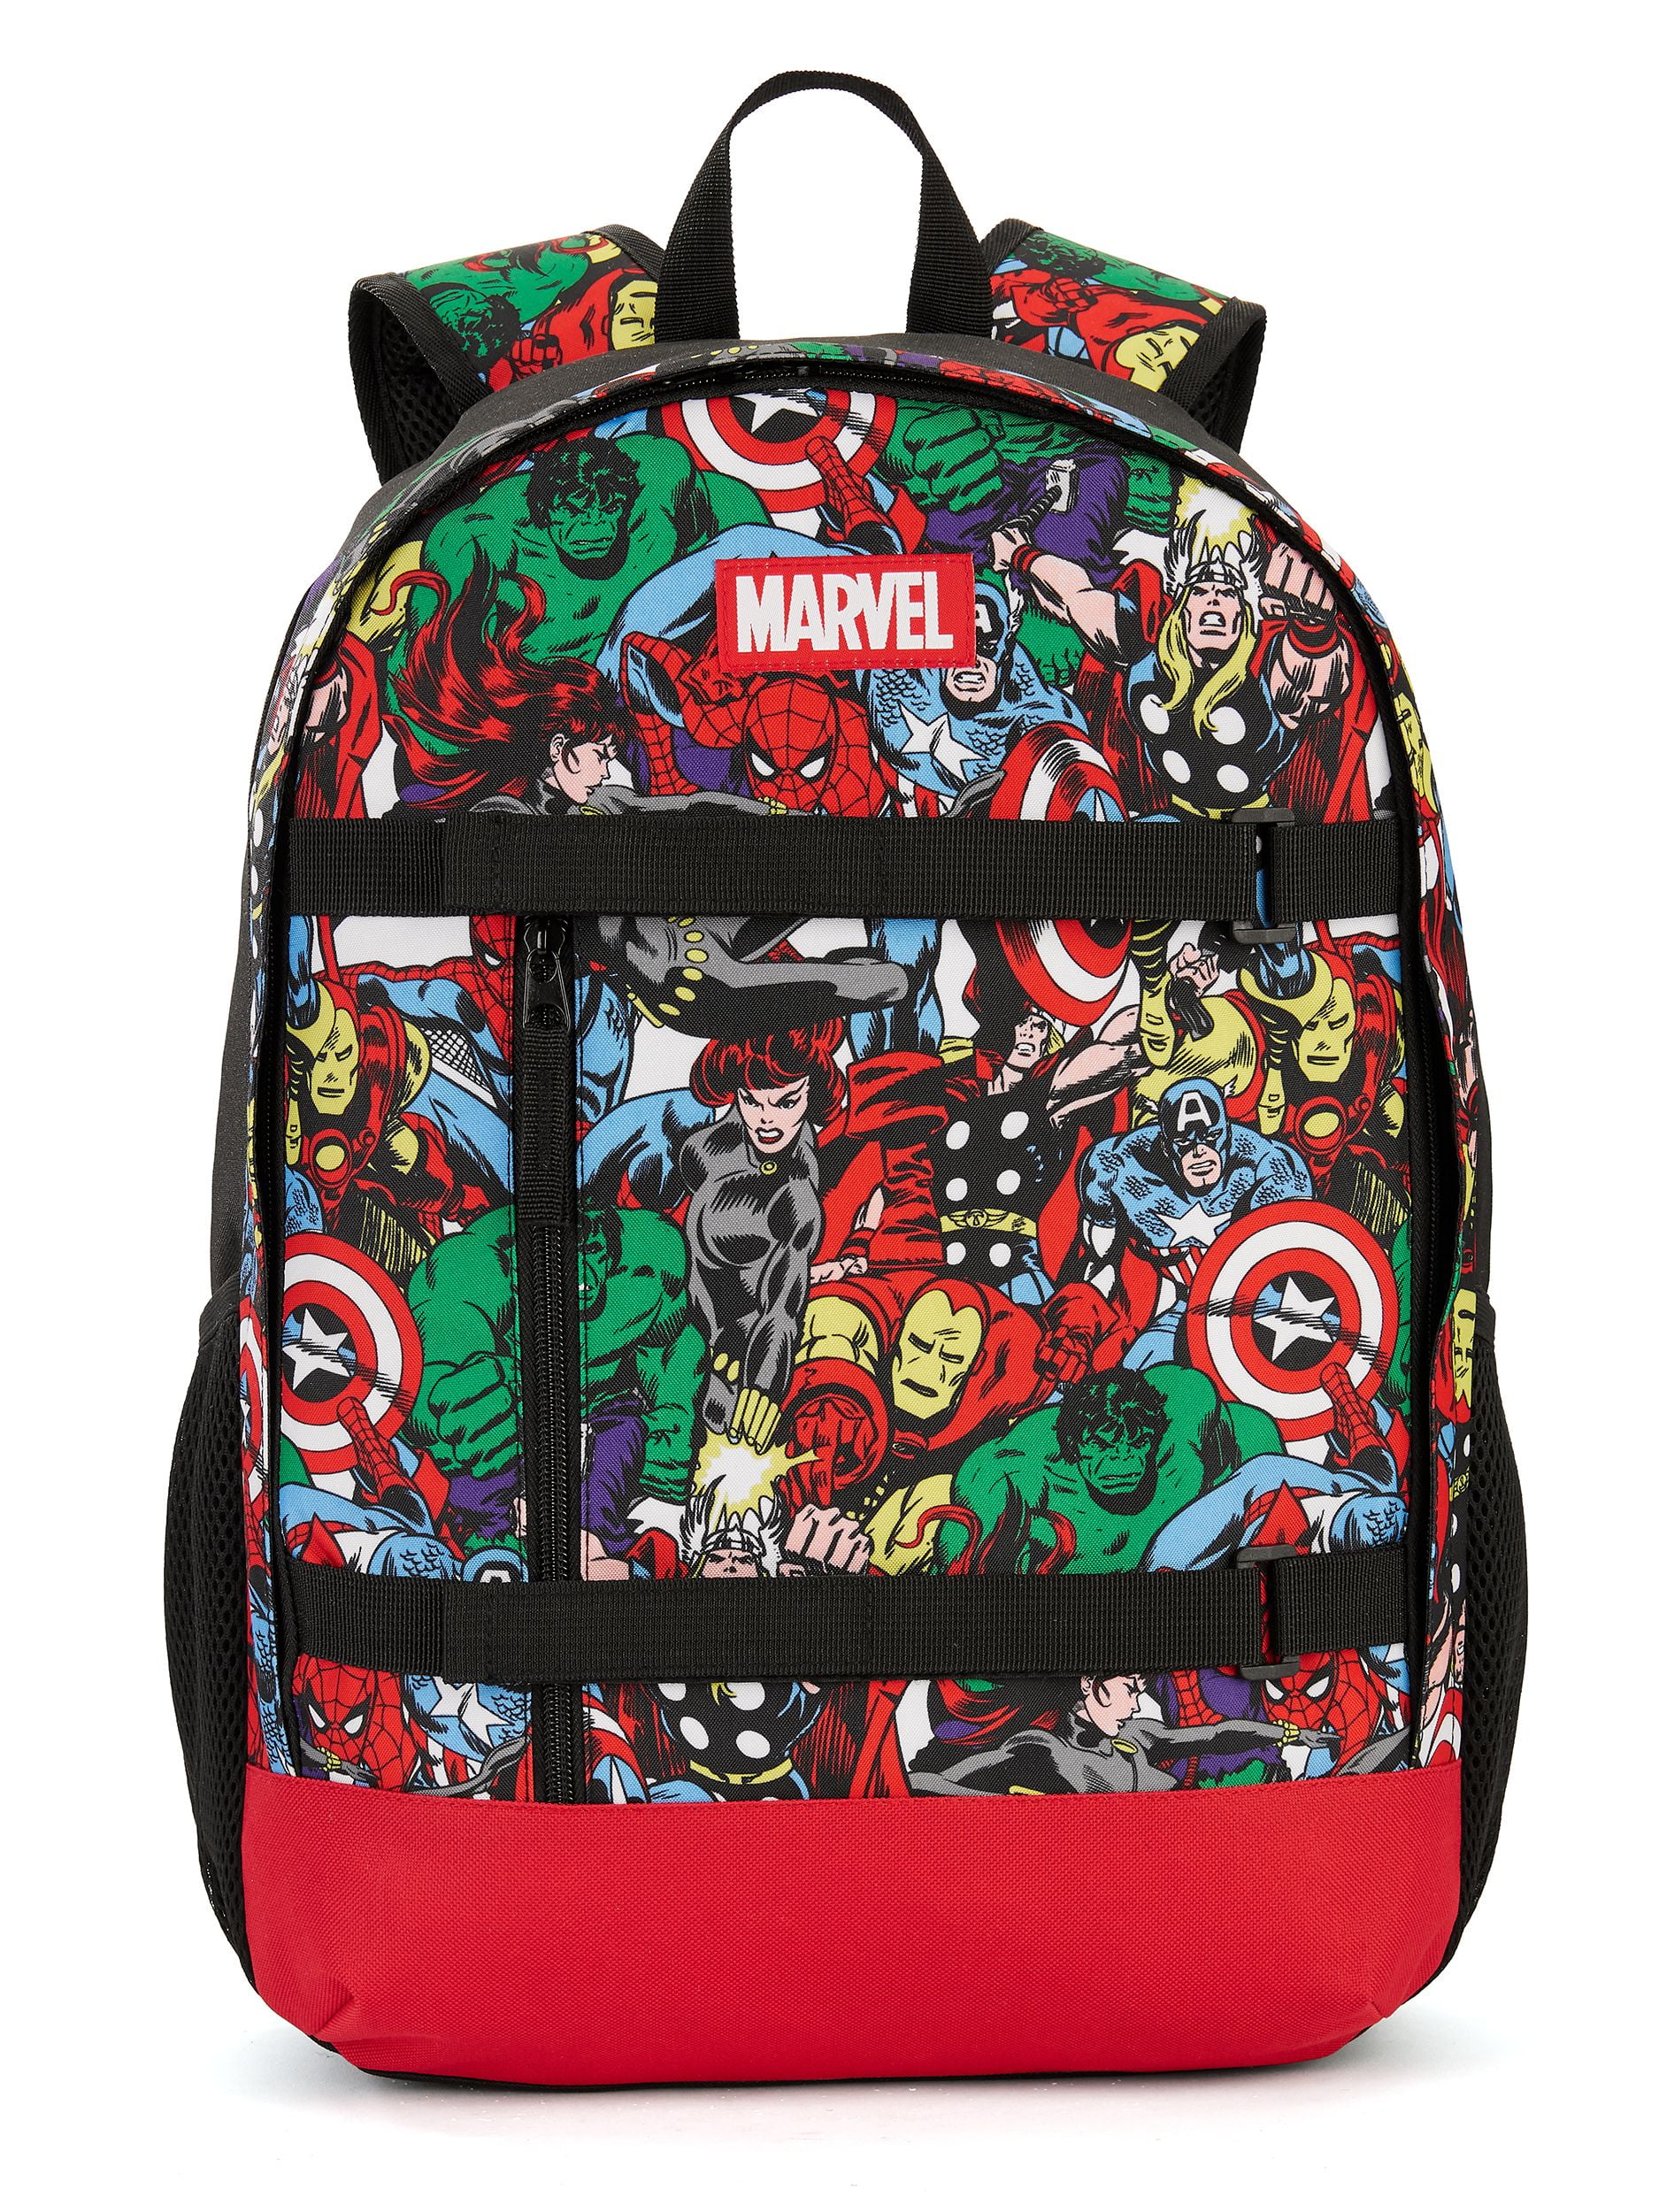 Marvel Marvel Avengers Comic Backpack